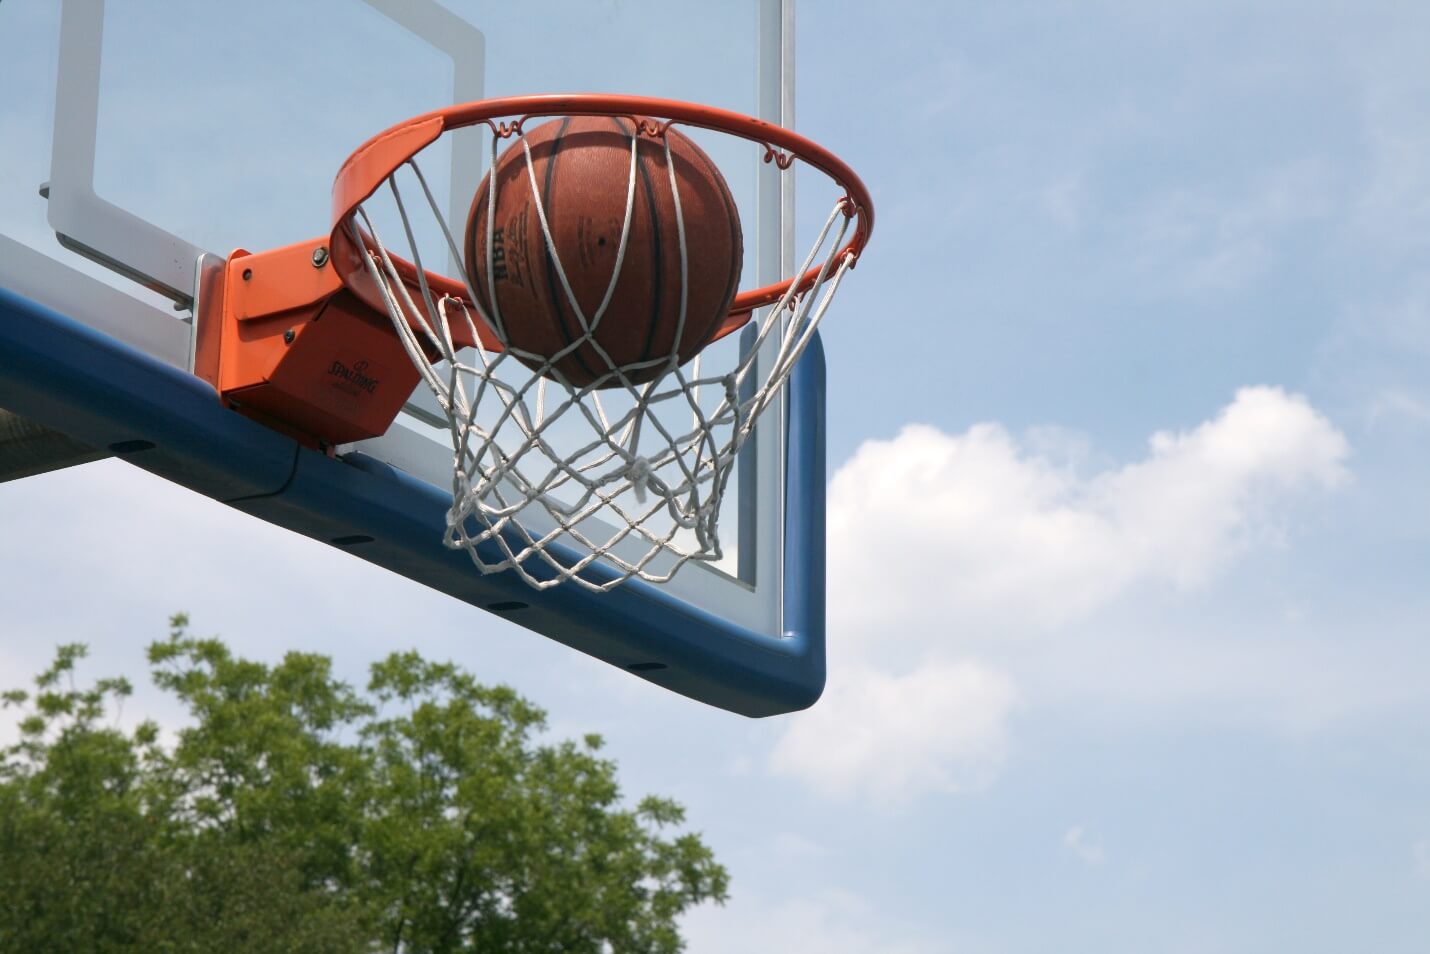 basketball shooting tips